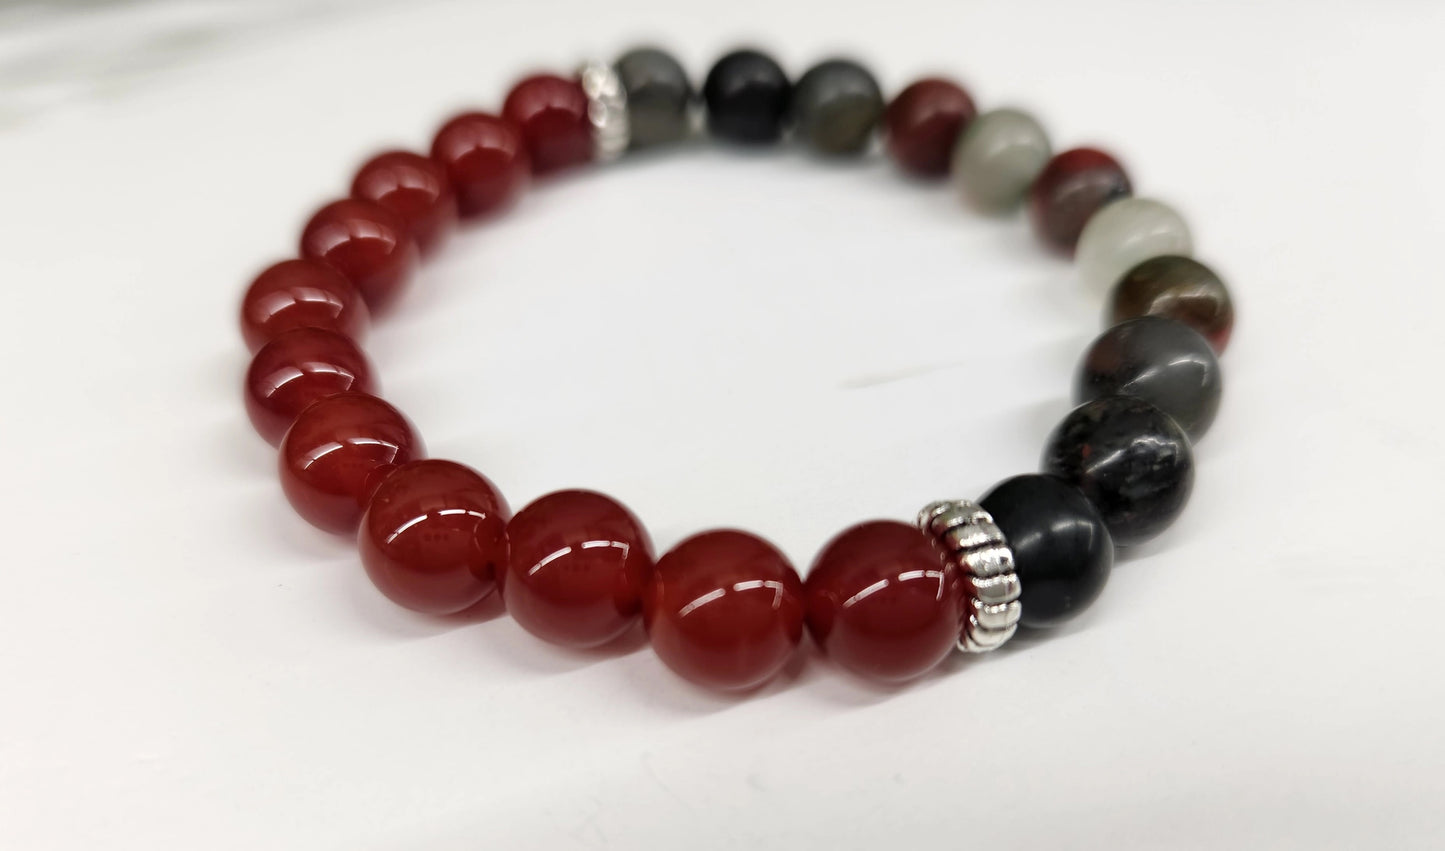 Health & Wellness - Carnelian/Bloodstone Bracelet 8mm Beads